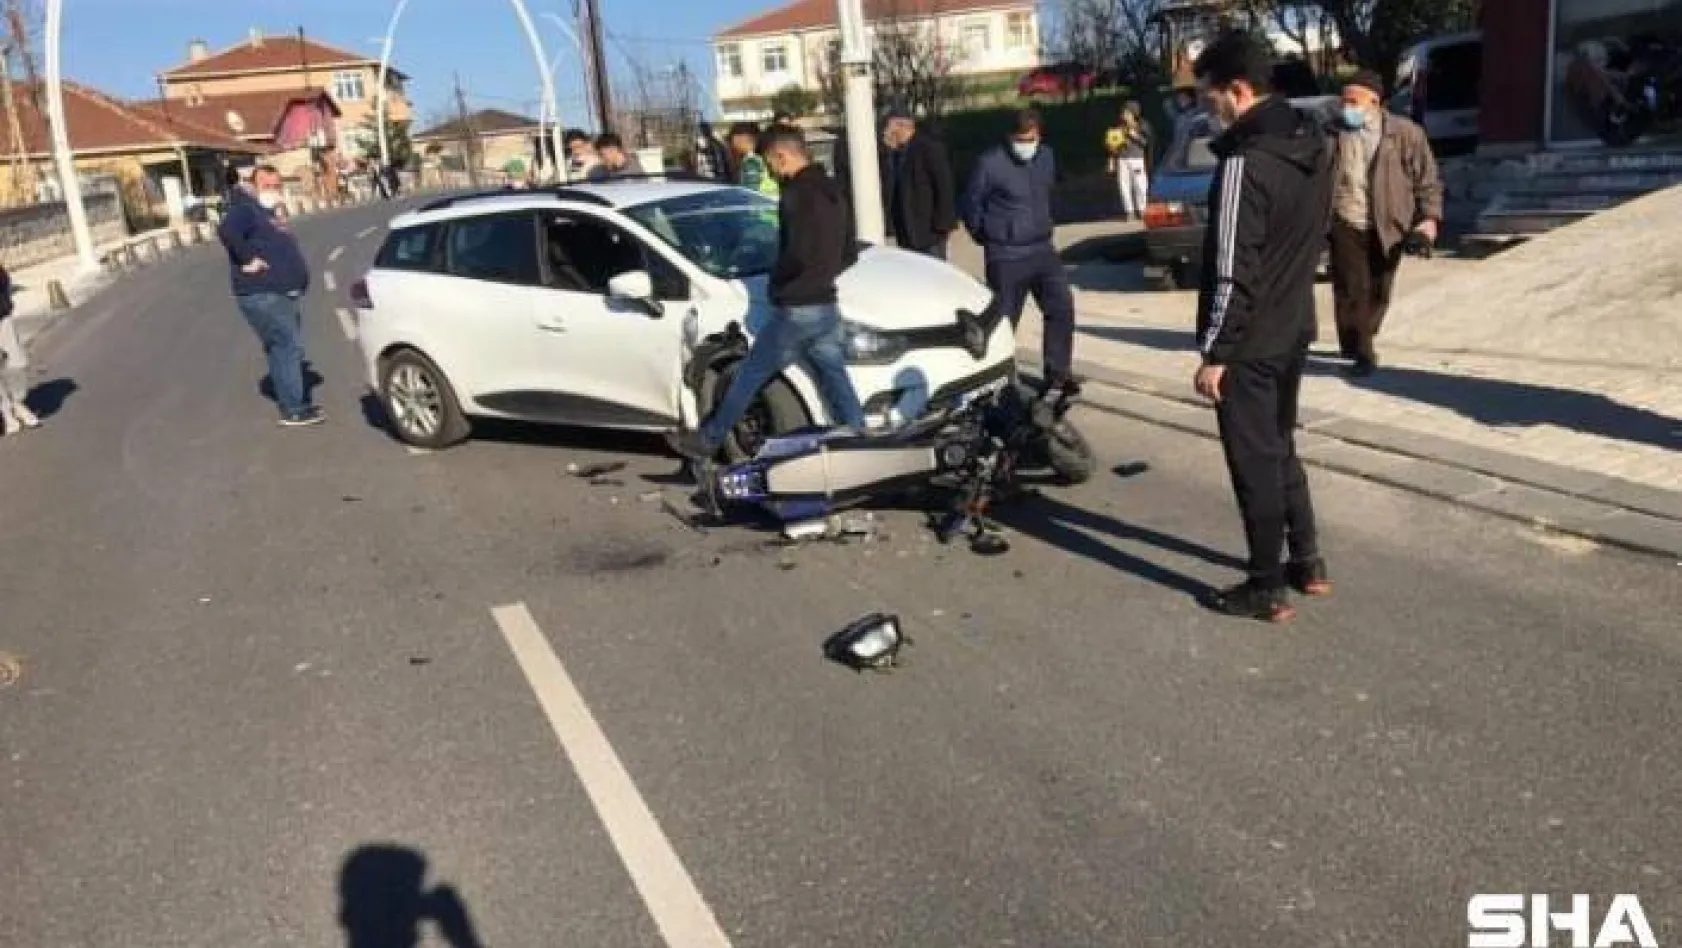 Motosiklet sürücüsünün ölümden döndüğü feci kaza kamerada